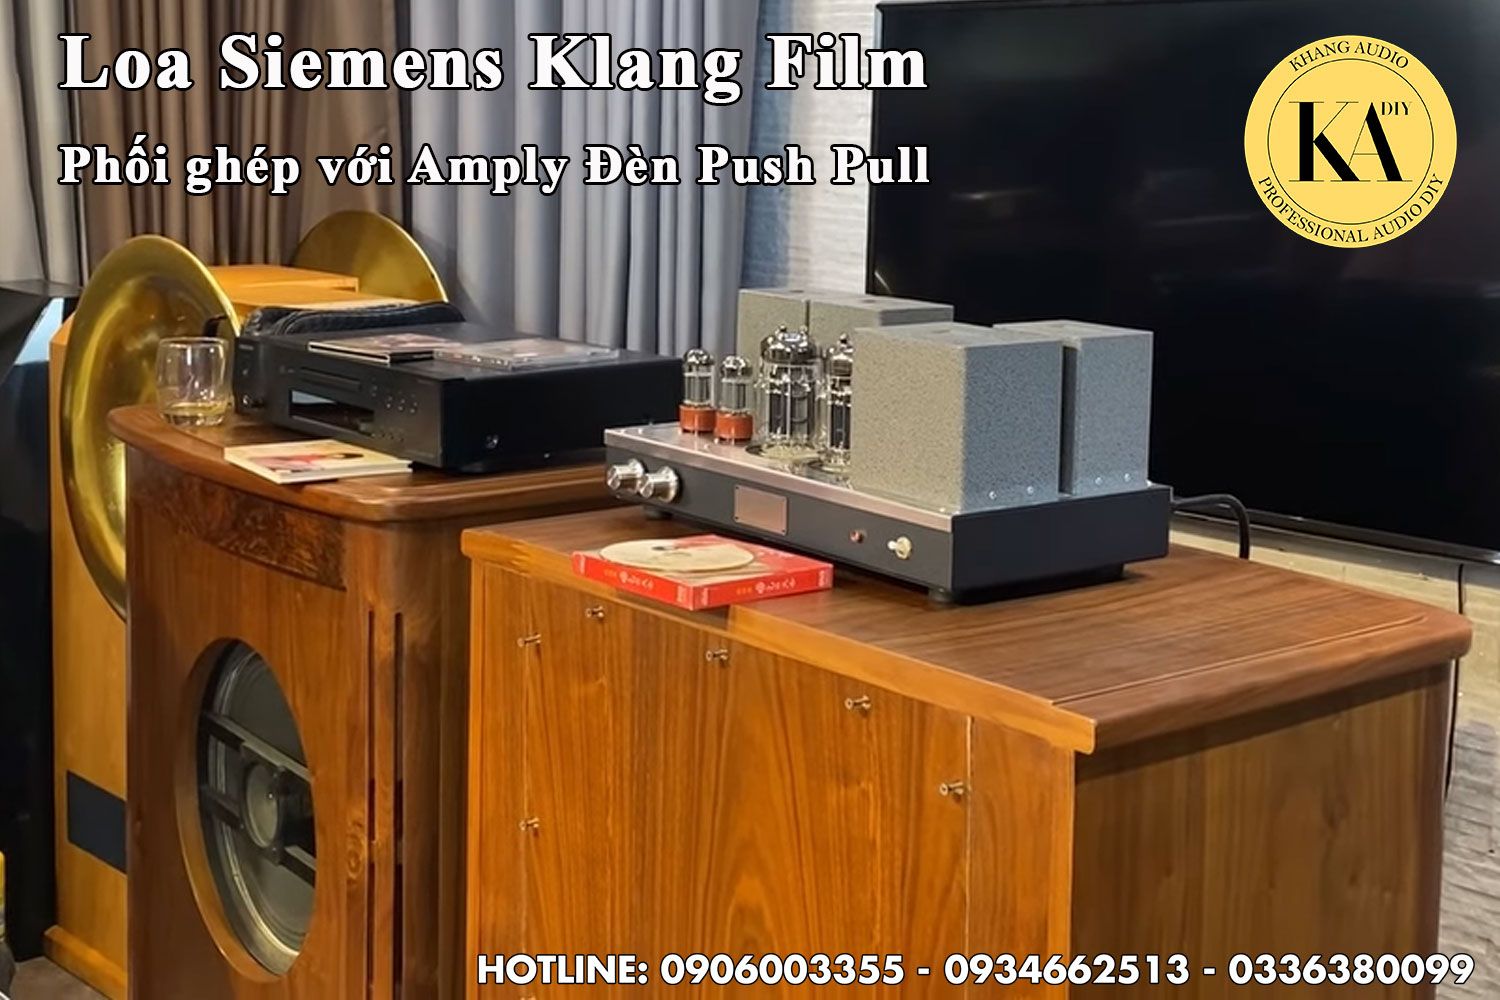  Loa Siemens Klang Film phối ghép Amply Đèn Pushpull